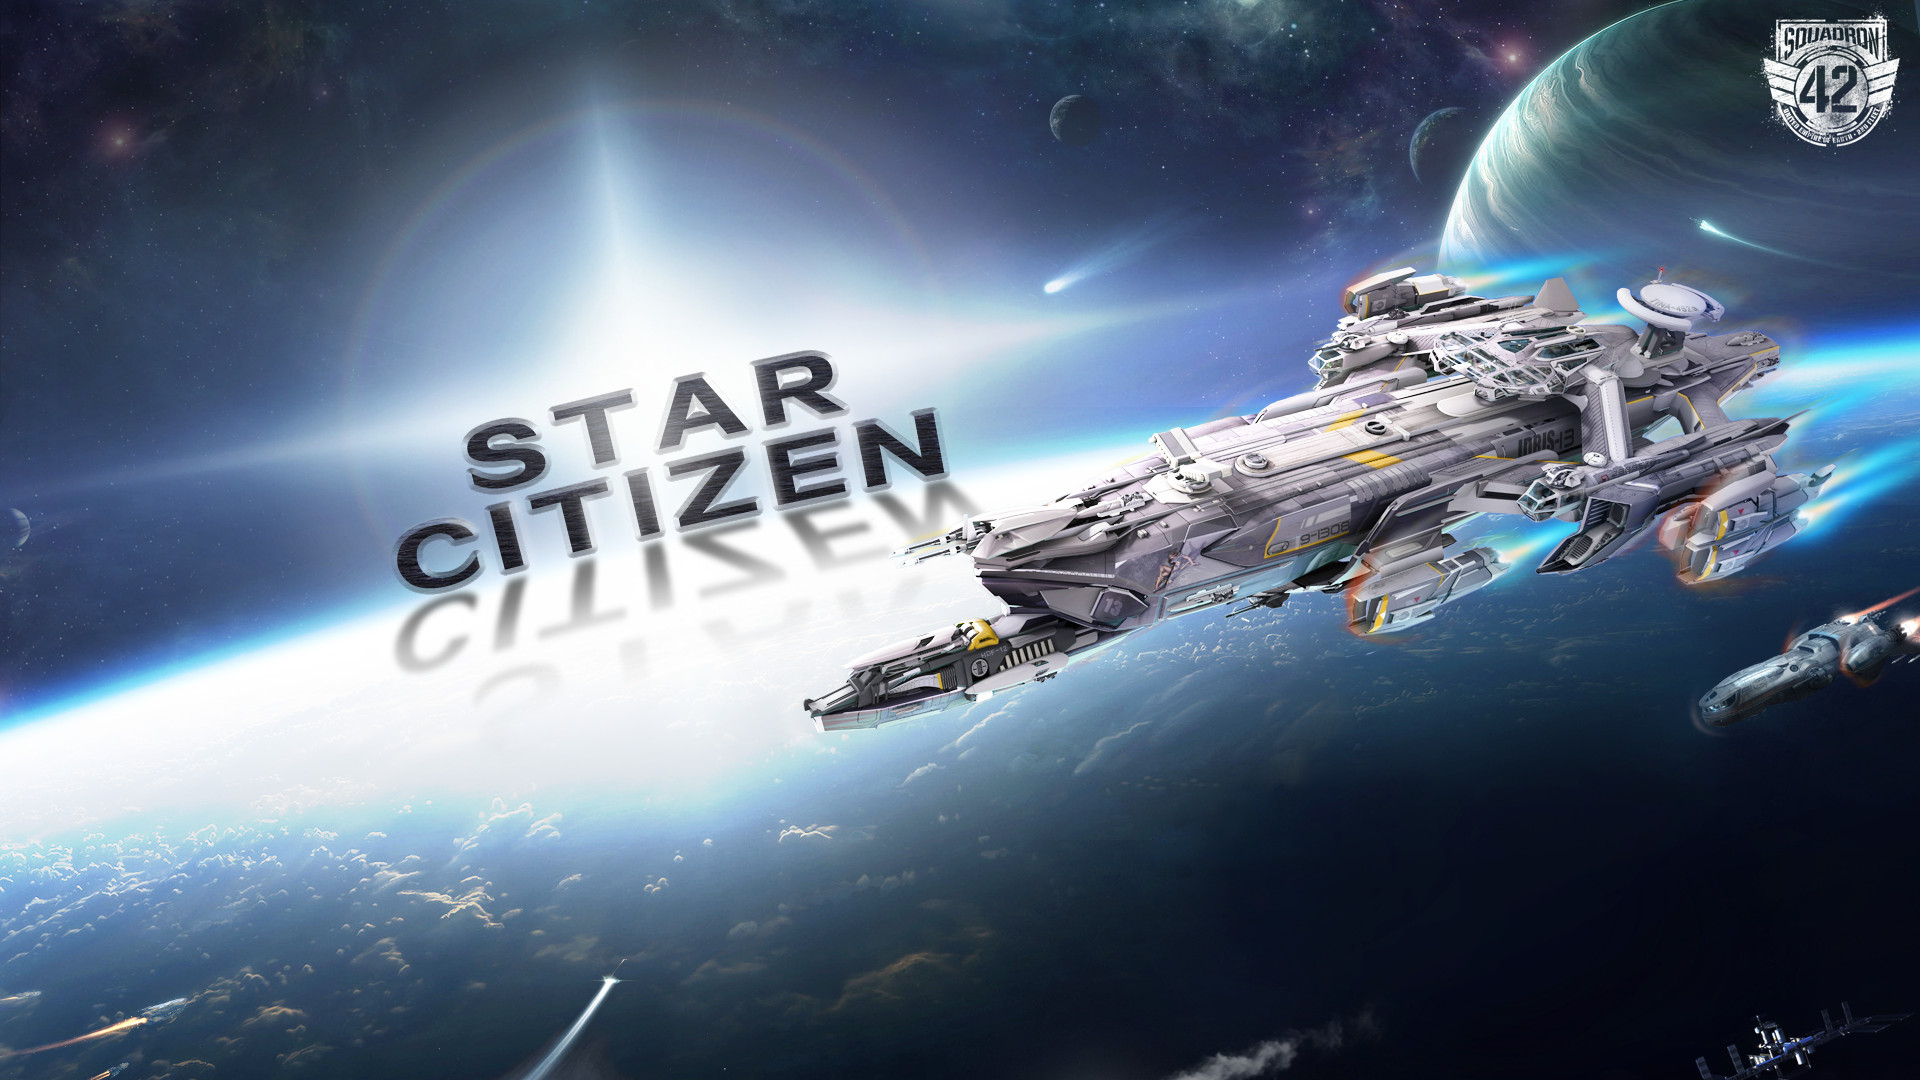 Star Citizen Alpha 3.0 Gameplay Demo (Citizencon 2016)